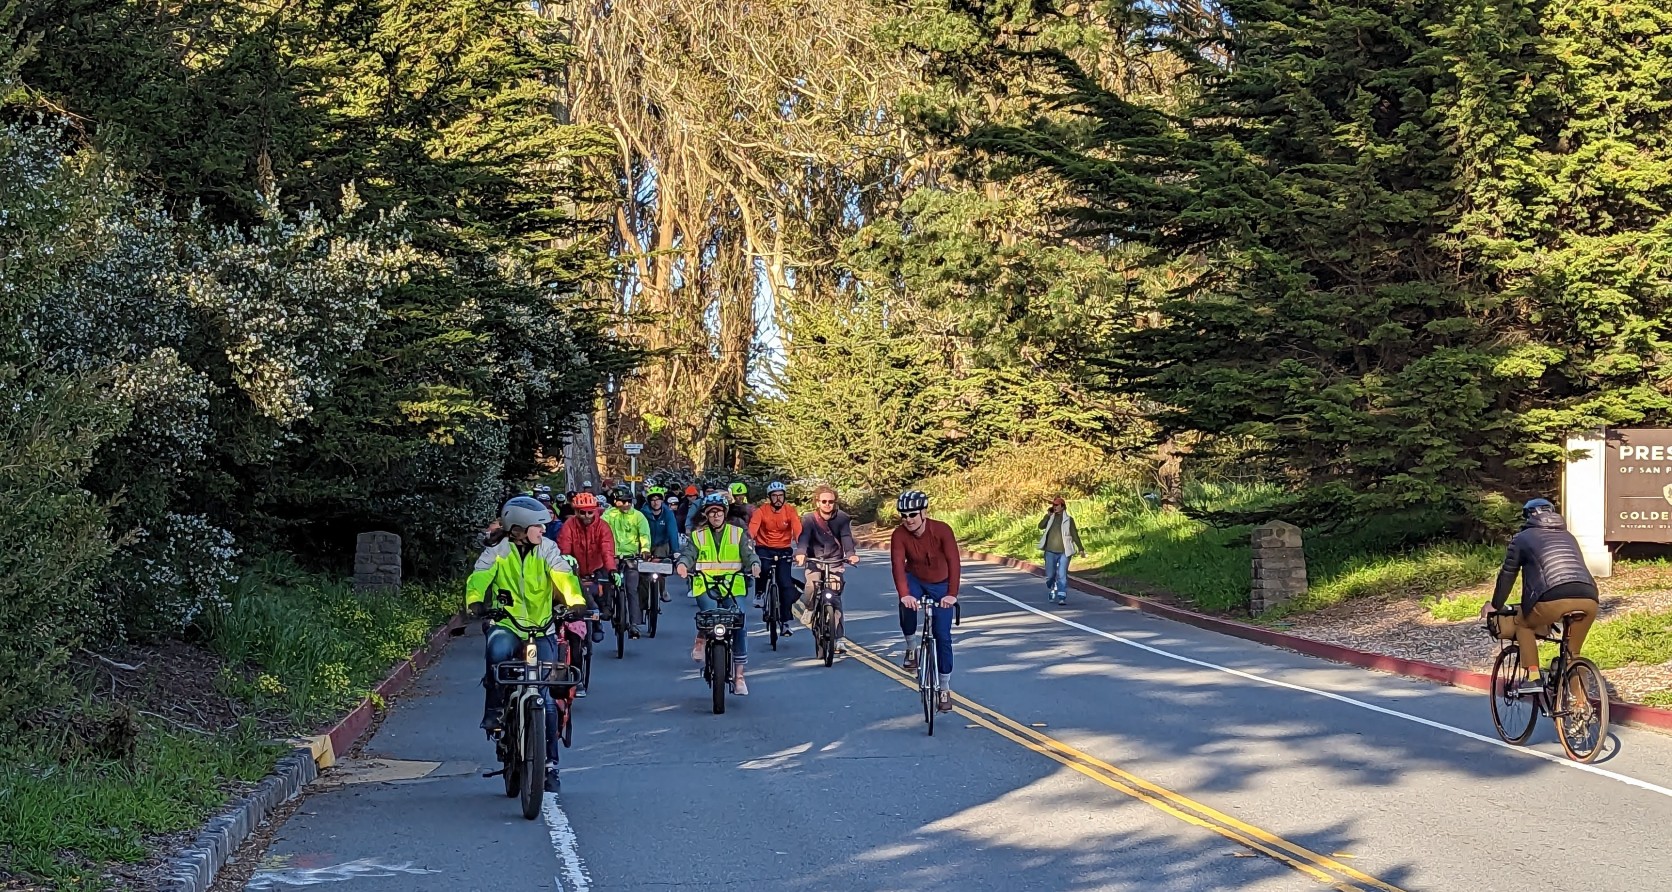 Group of people riding bikes through Presidio Gate.